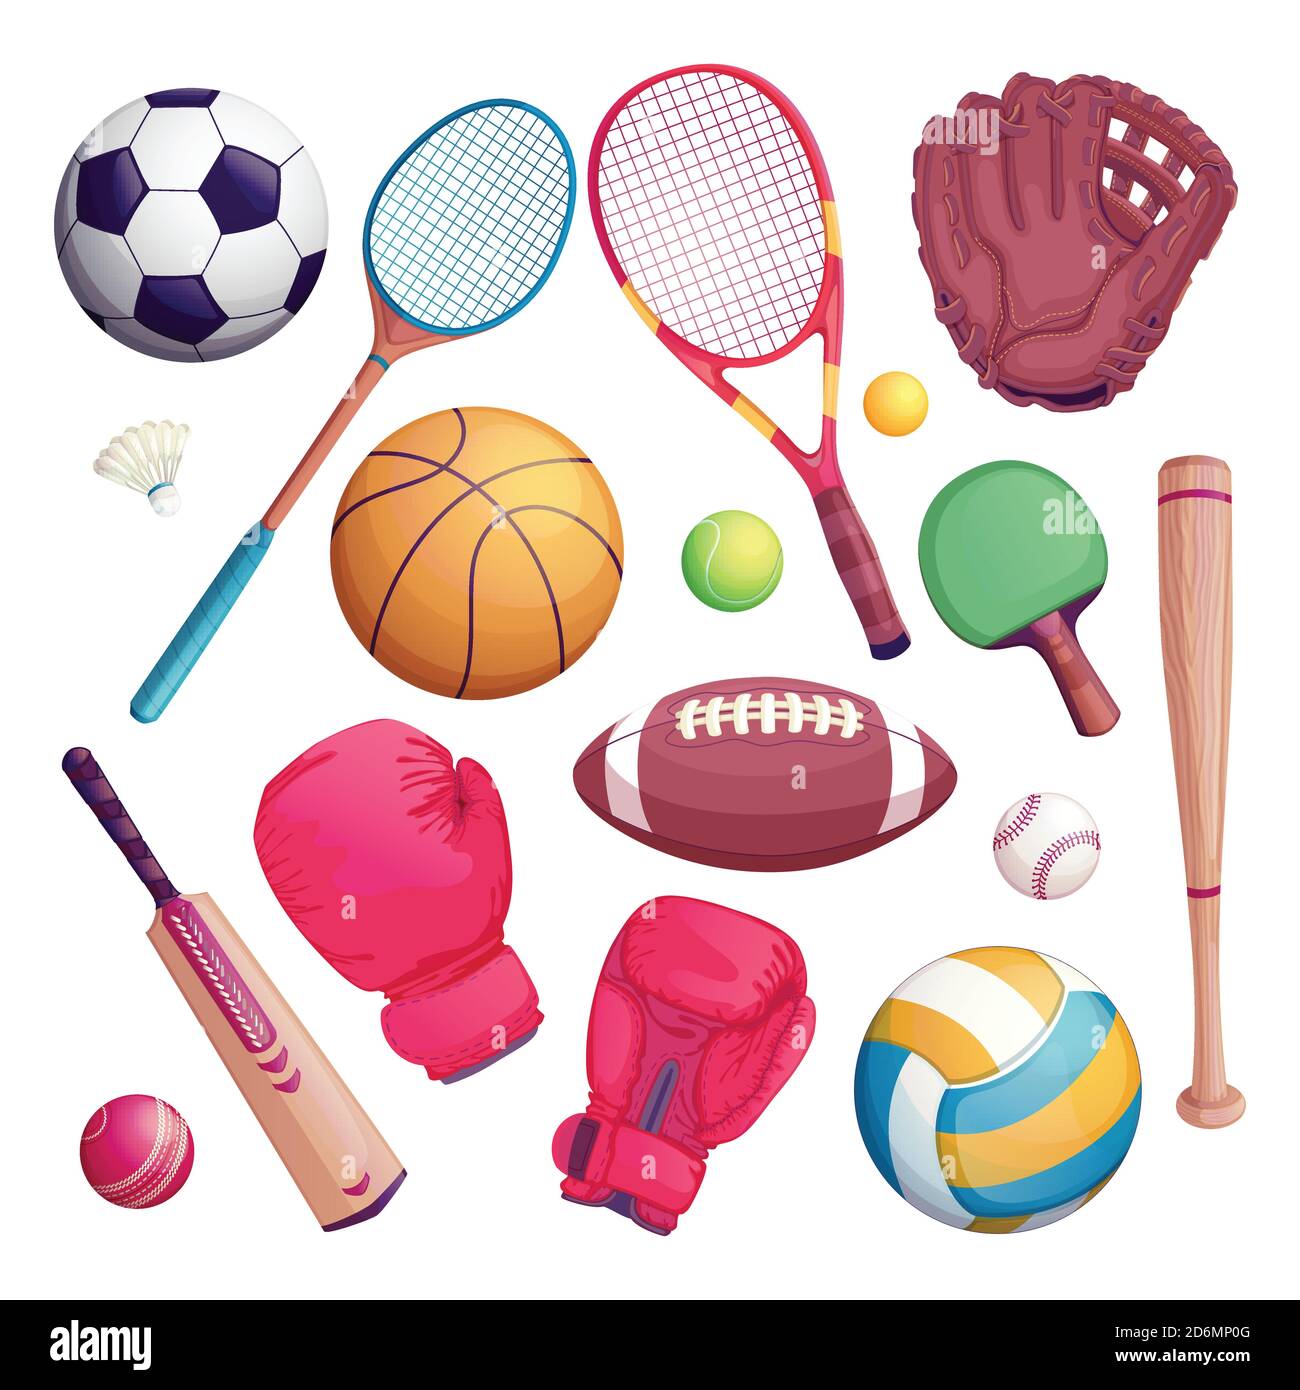 Le attrezzature sportive isolano gli oggetti. Cartoni animati vettoriali illustrazione di calcio, calcio, tennis, cricket, simboli di gioco di baseball. Illustrazione Vettoriale